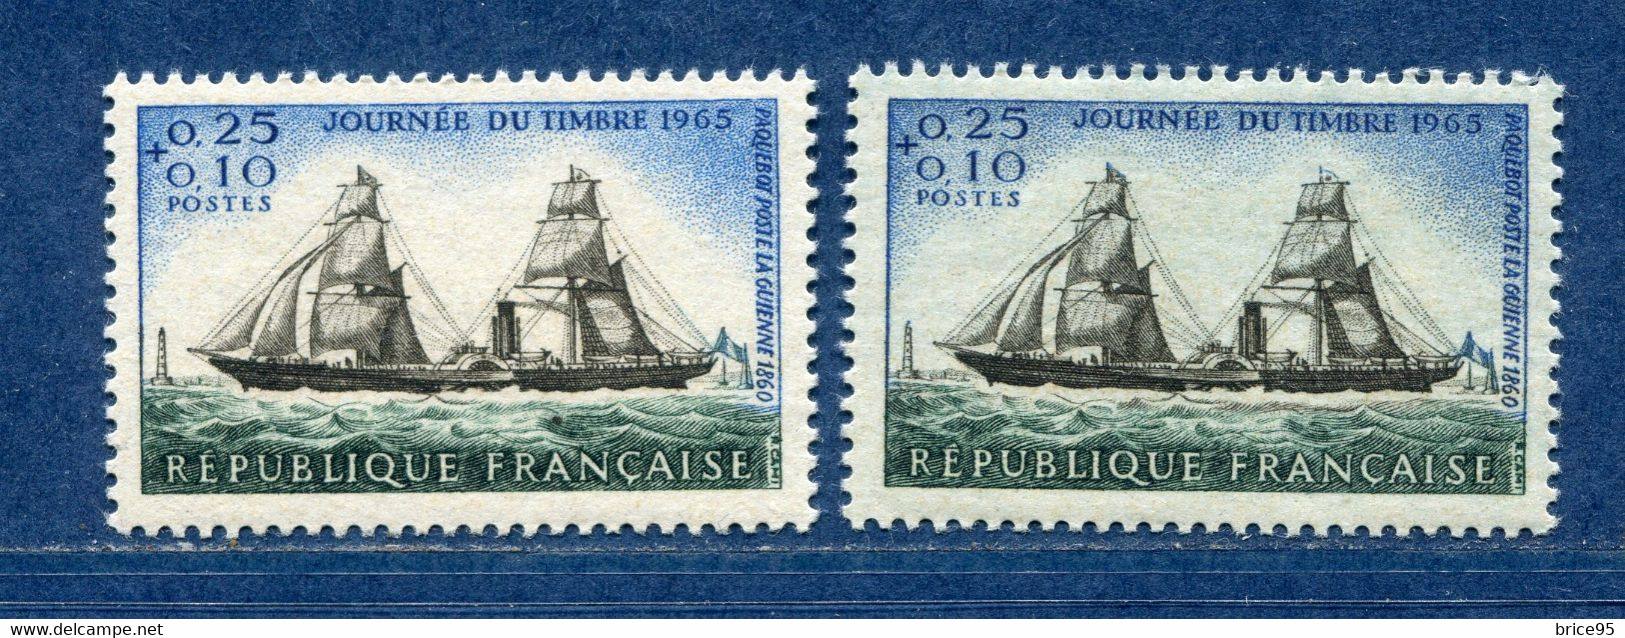 ⭐ France - Variété - YT N° 1546 - Couleurs - Pétouilles - Neuf Sans Charnière - 1965 ⭐ - Neufs